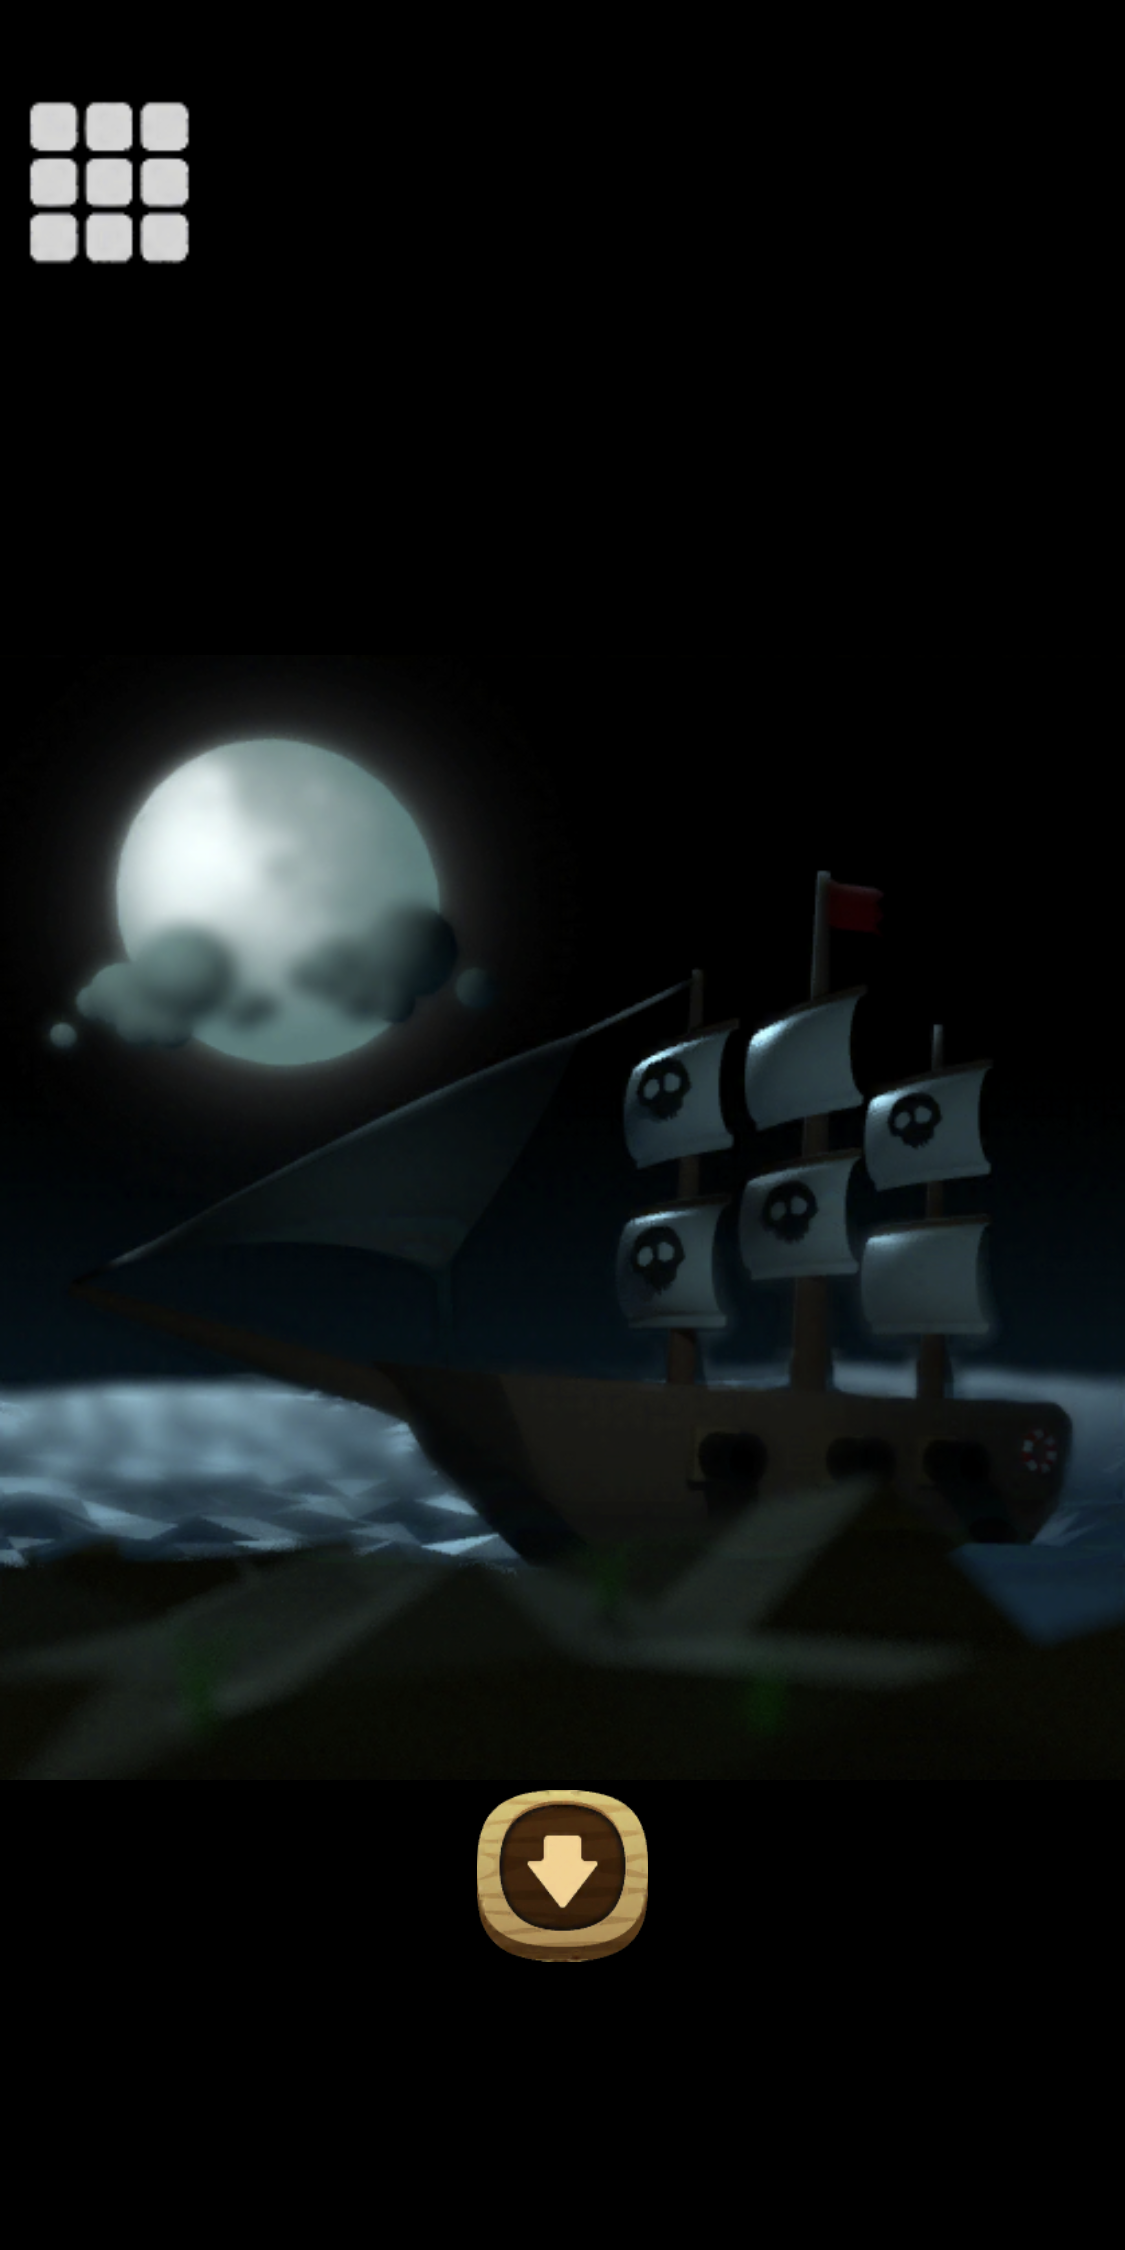 Screenshot 1 of एस्केप गेम-समुद्री डाकुओं की दुनिया- 1.0.1